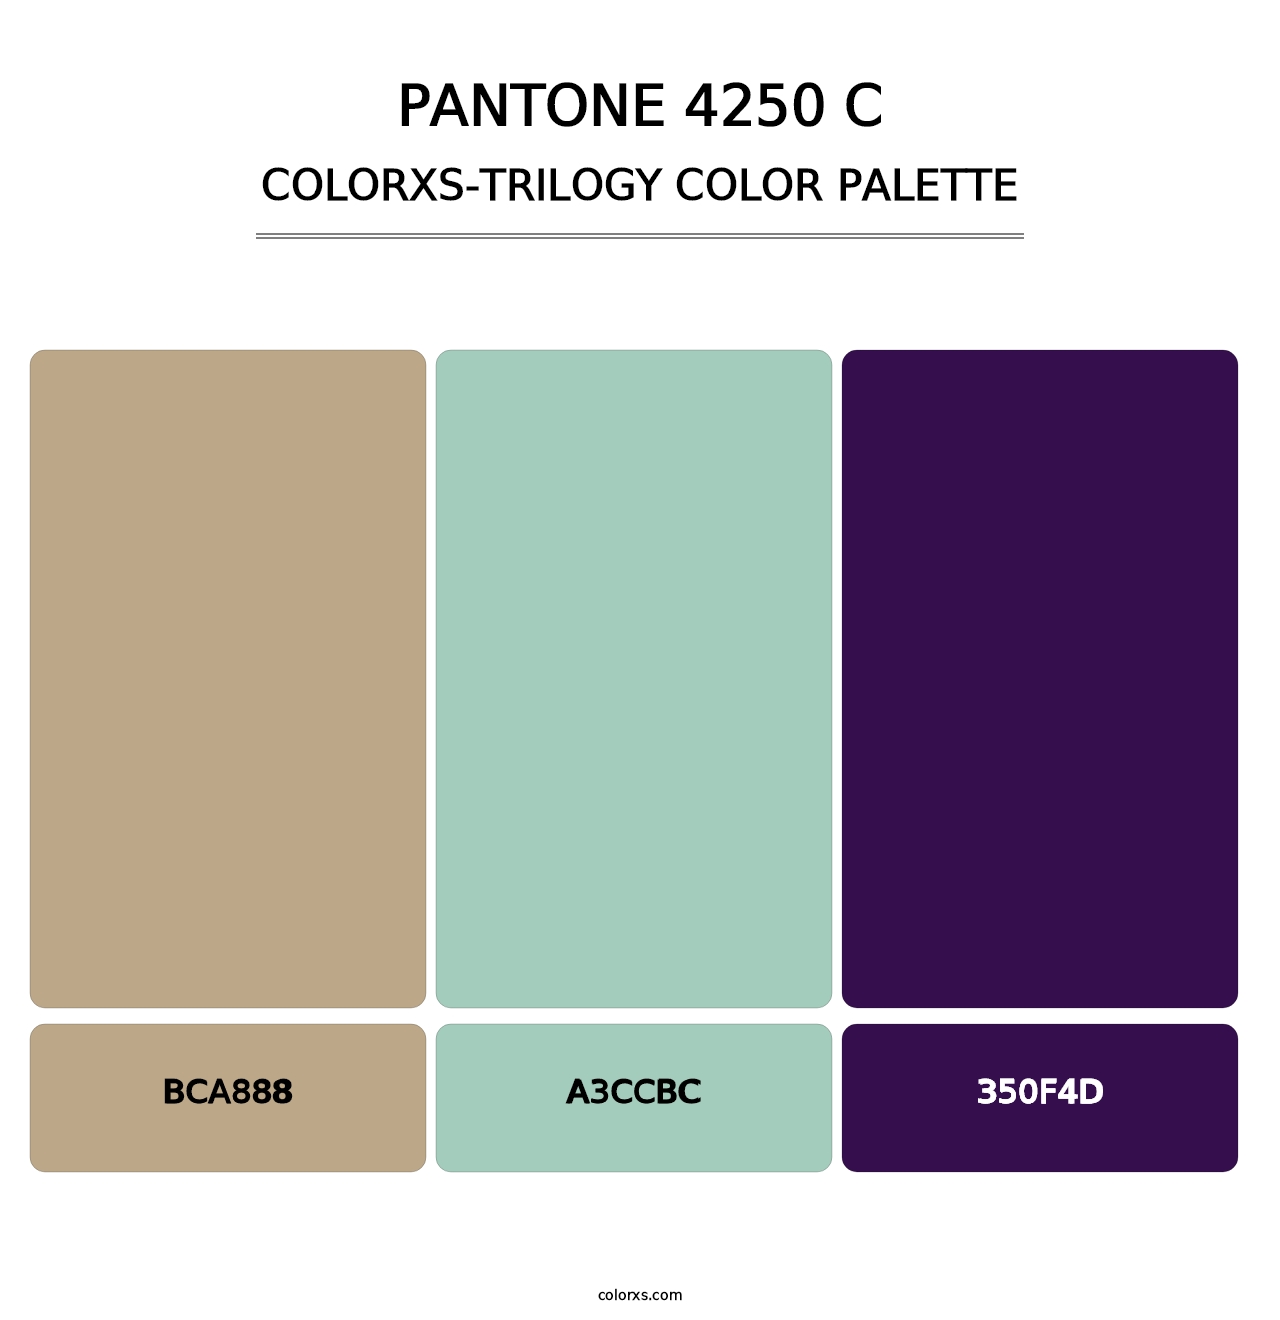 PANTONE 4250 C - Colorxs Trilogy Palette